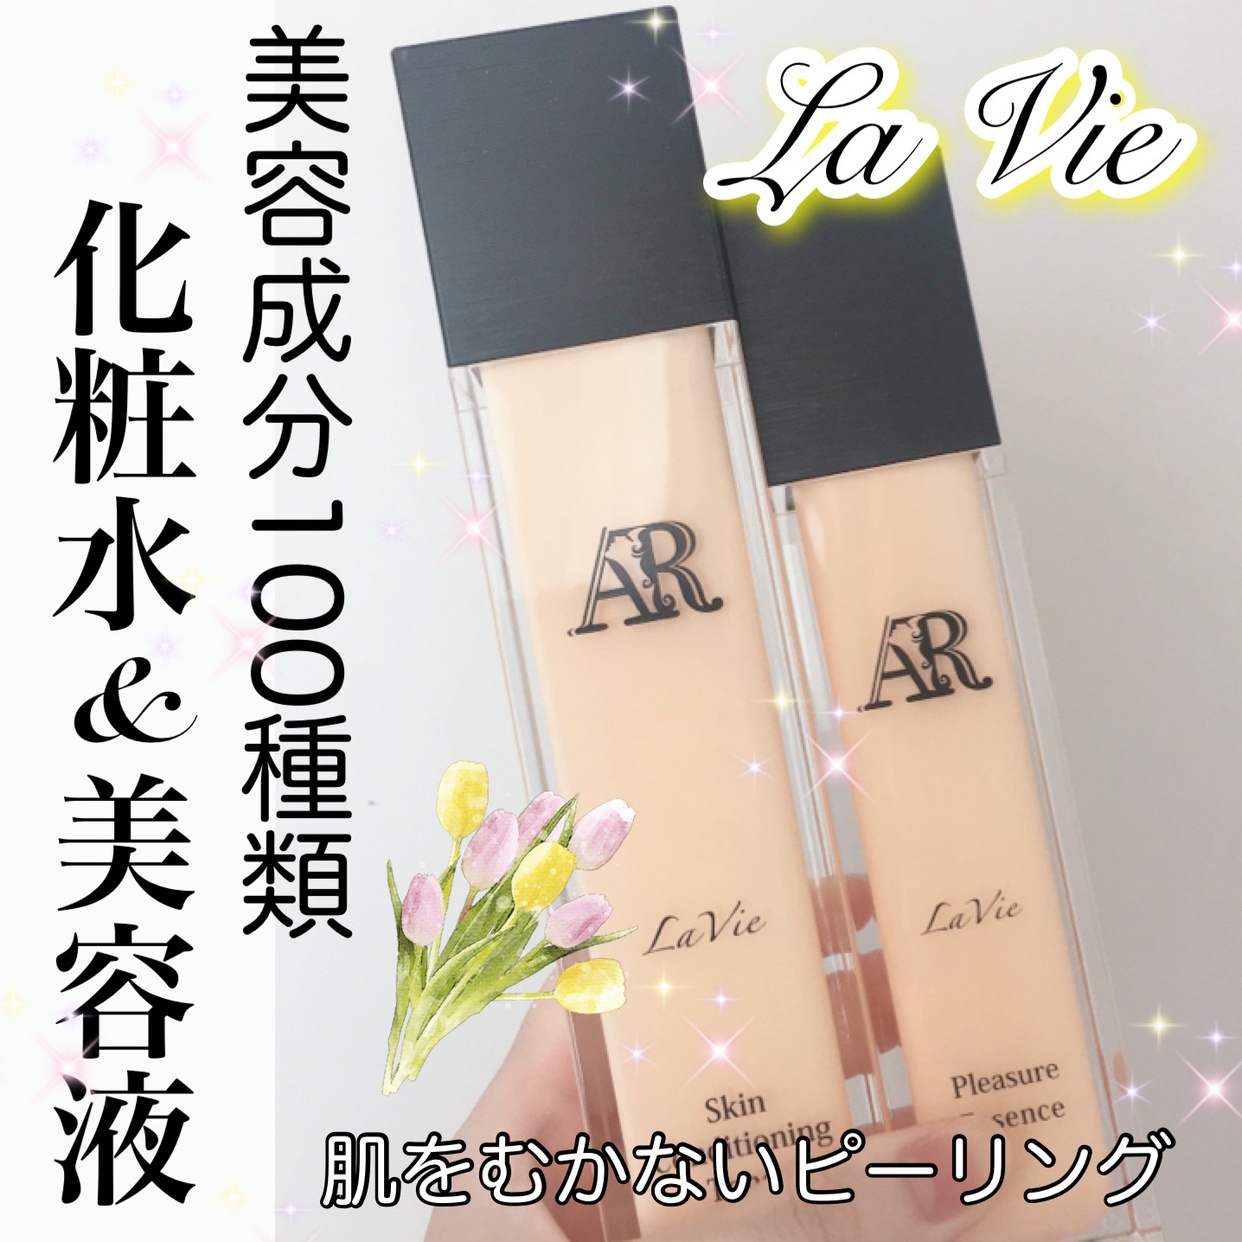 AR Cosmetics TOKYO(エーアールコスメティクストウキョウ) AR化粧水を使ったyunaさんのクチコミ画像1